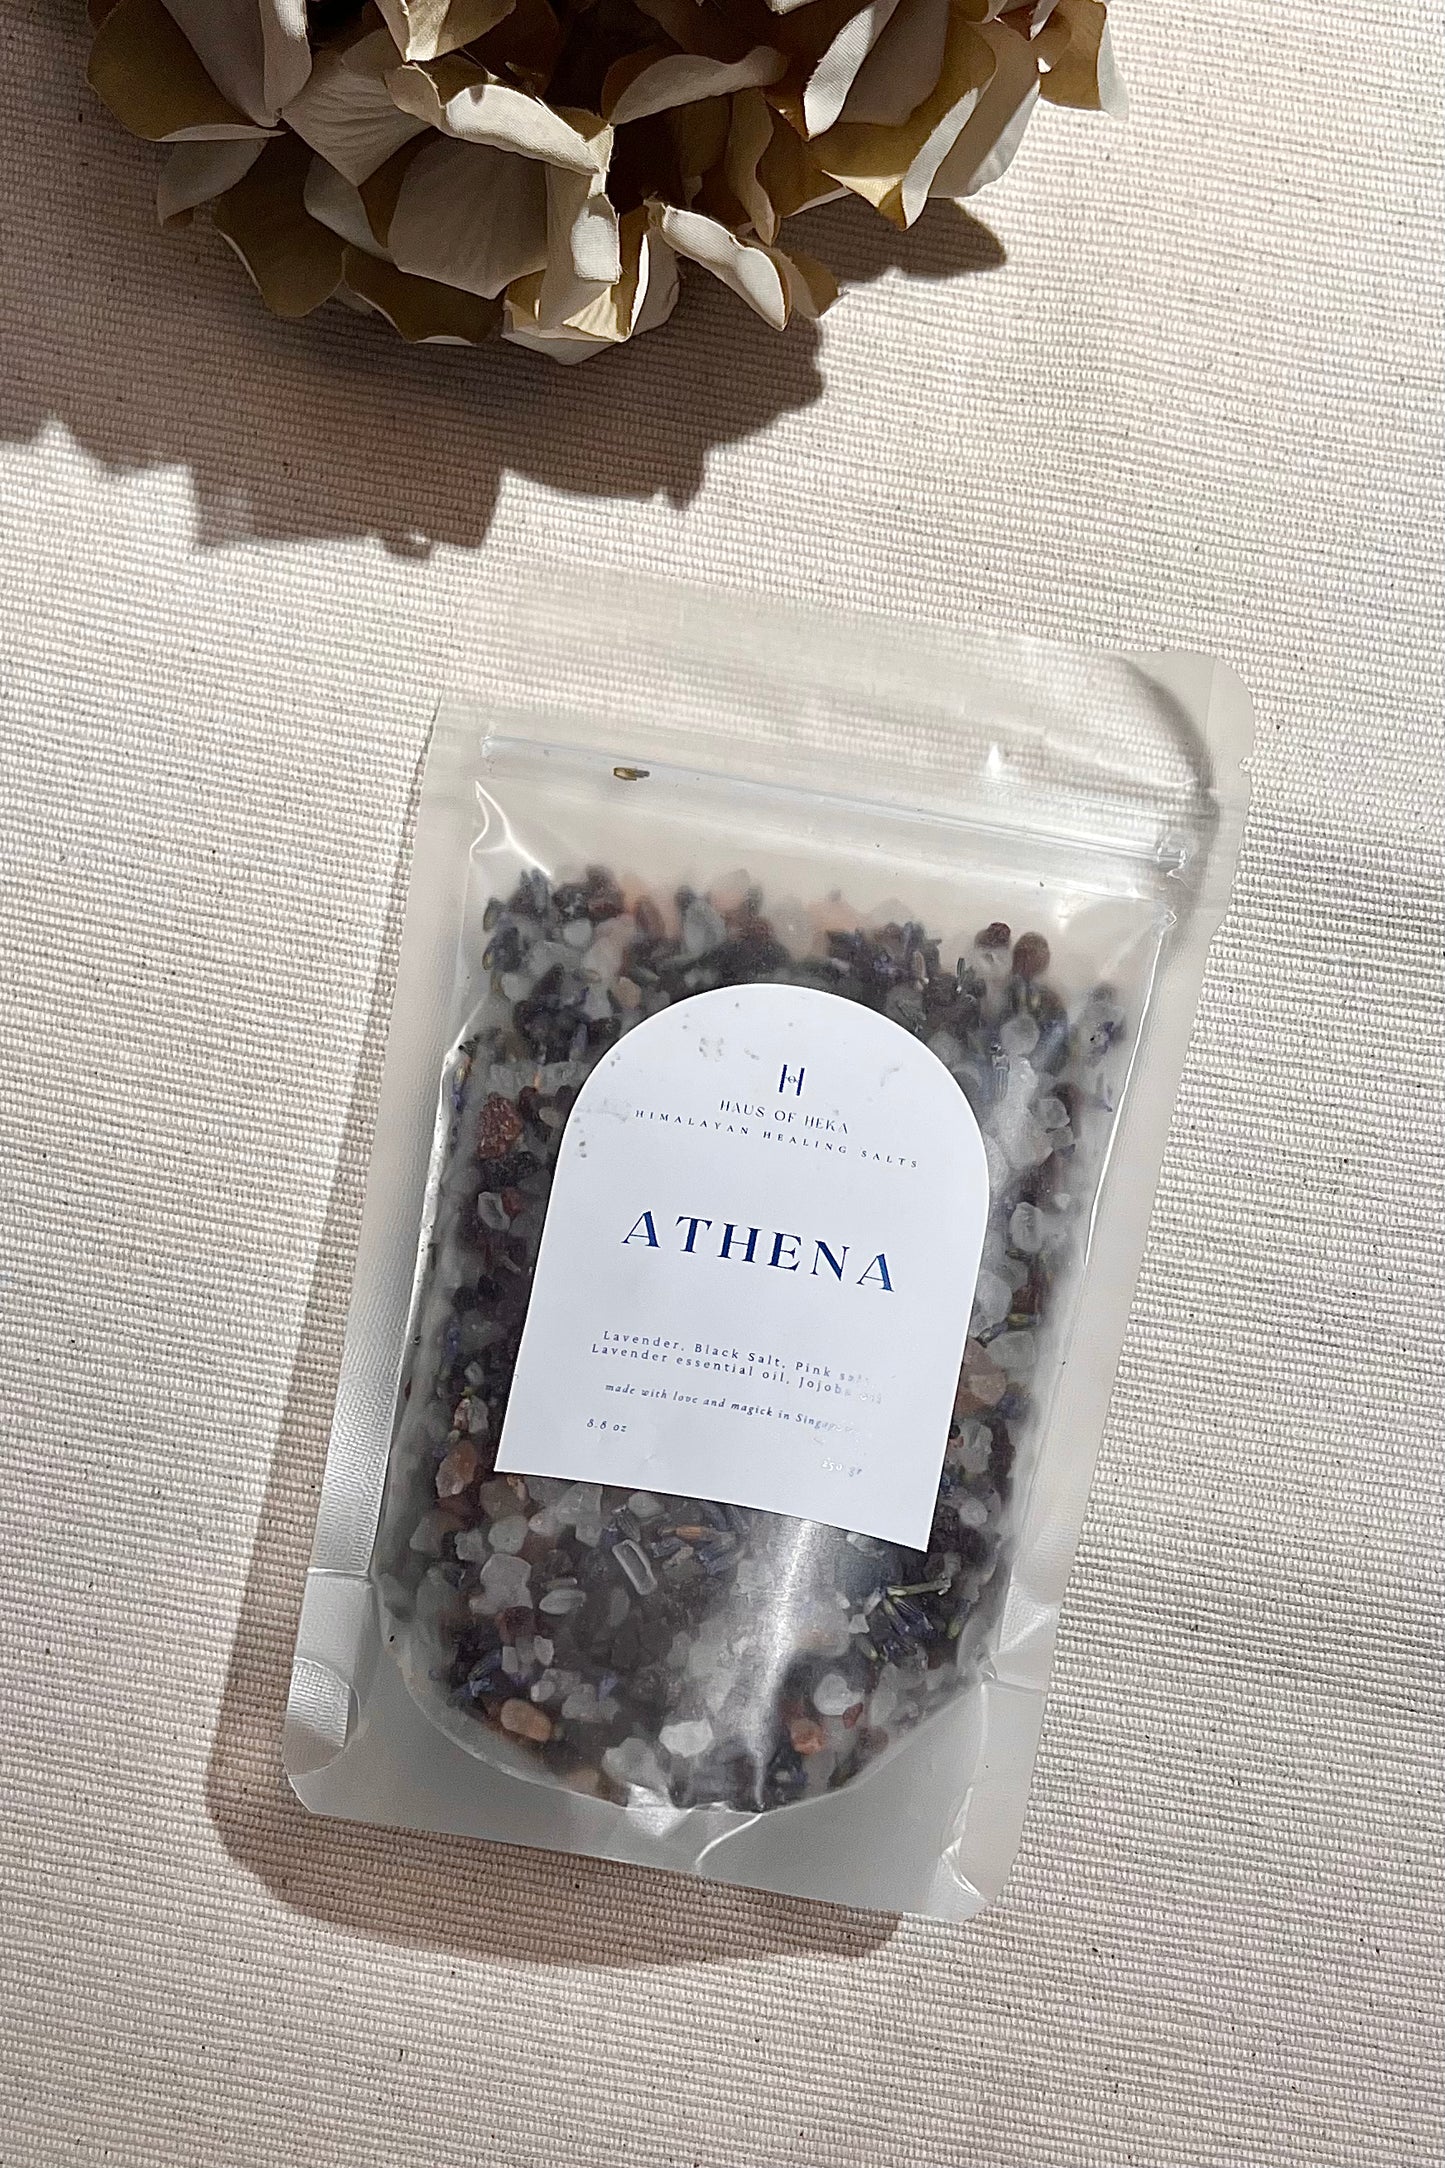 Athena Himalayan Healing Salts